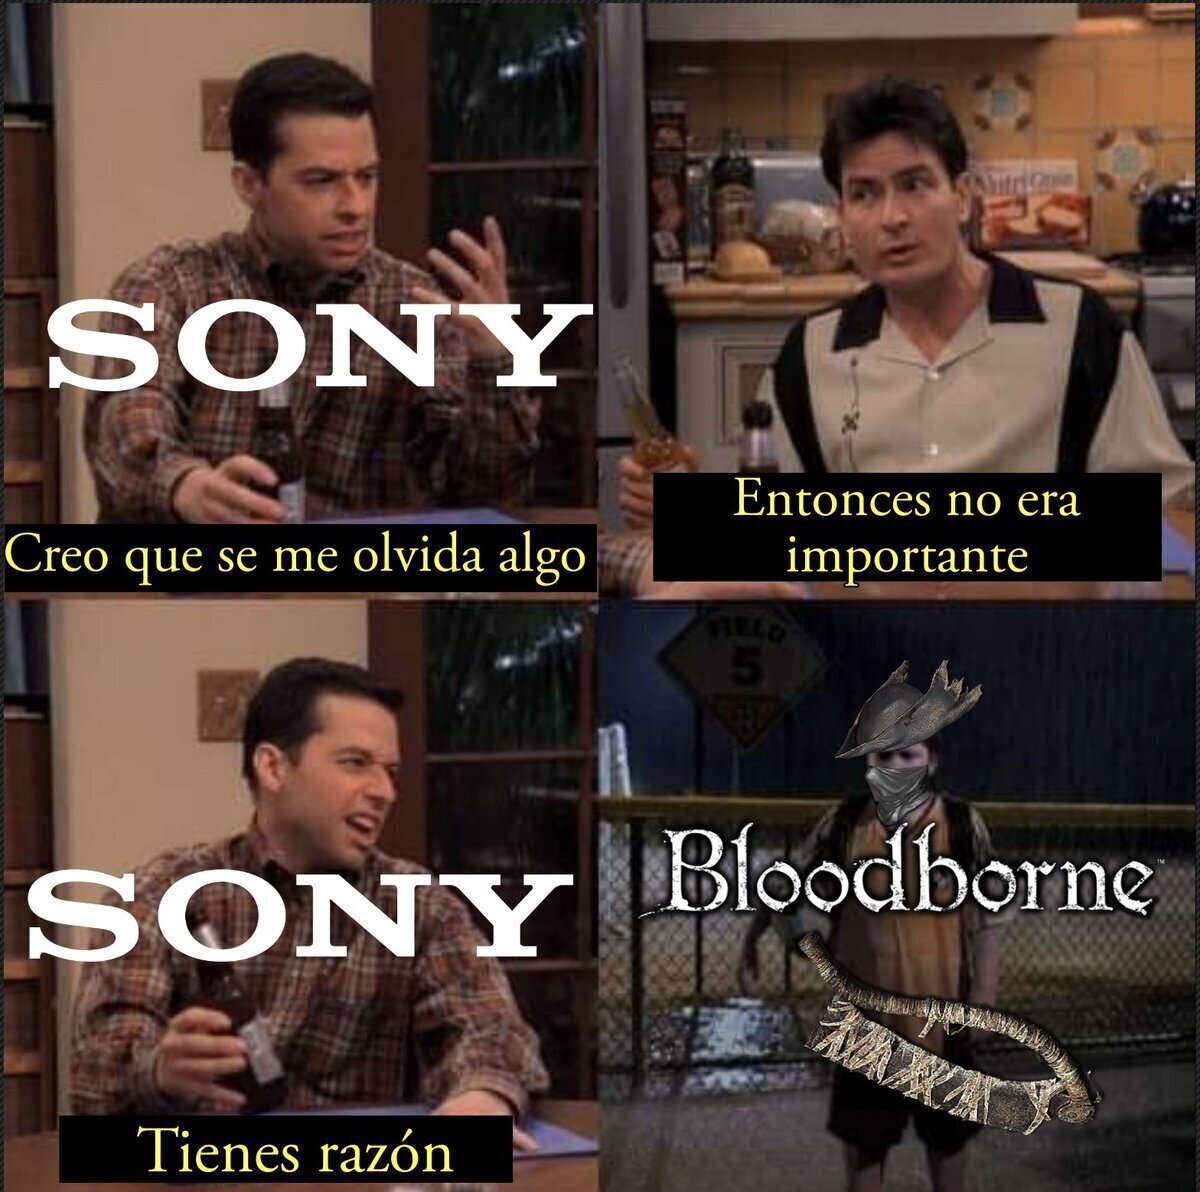 Bloodborne: *vende 7.5 millones de copias* Sony: